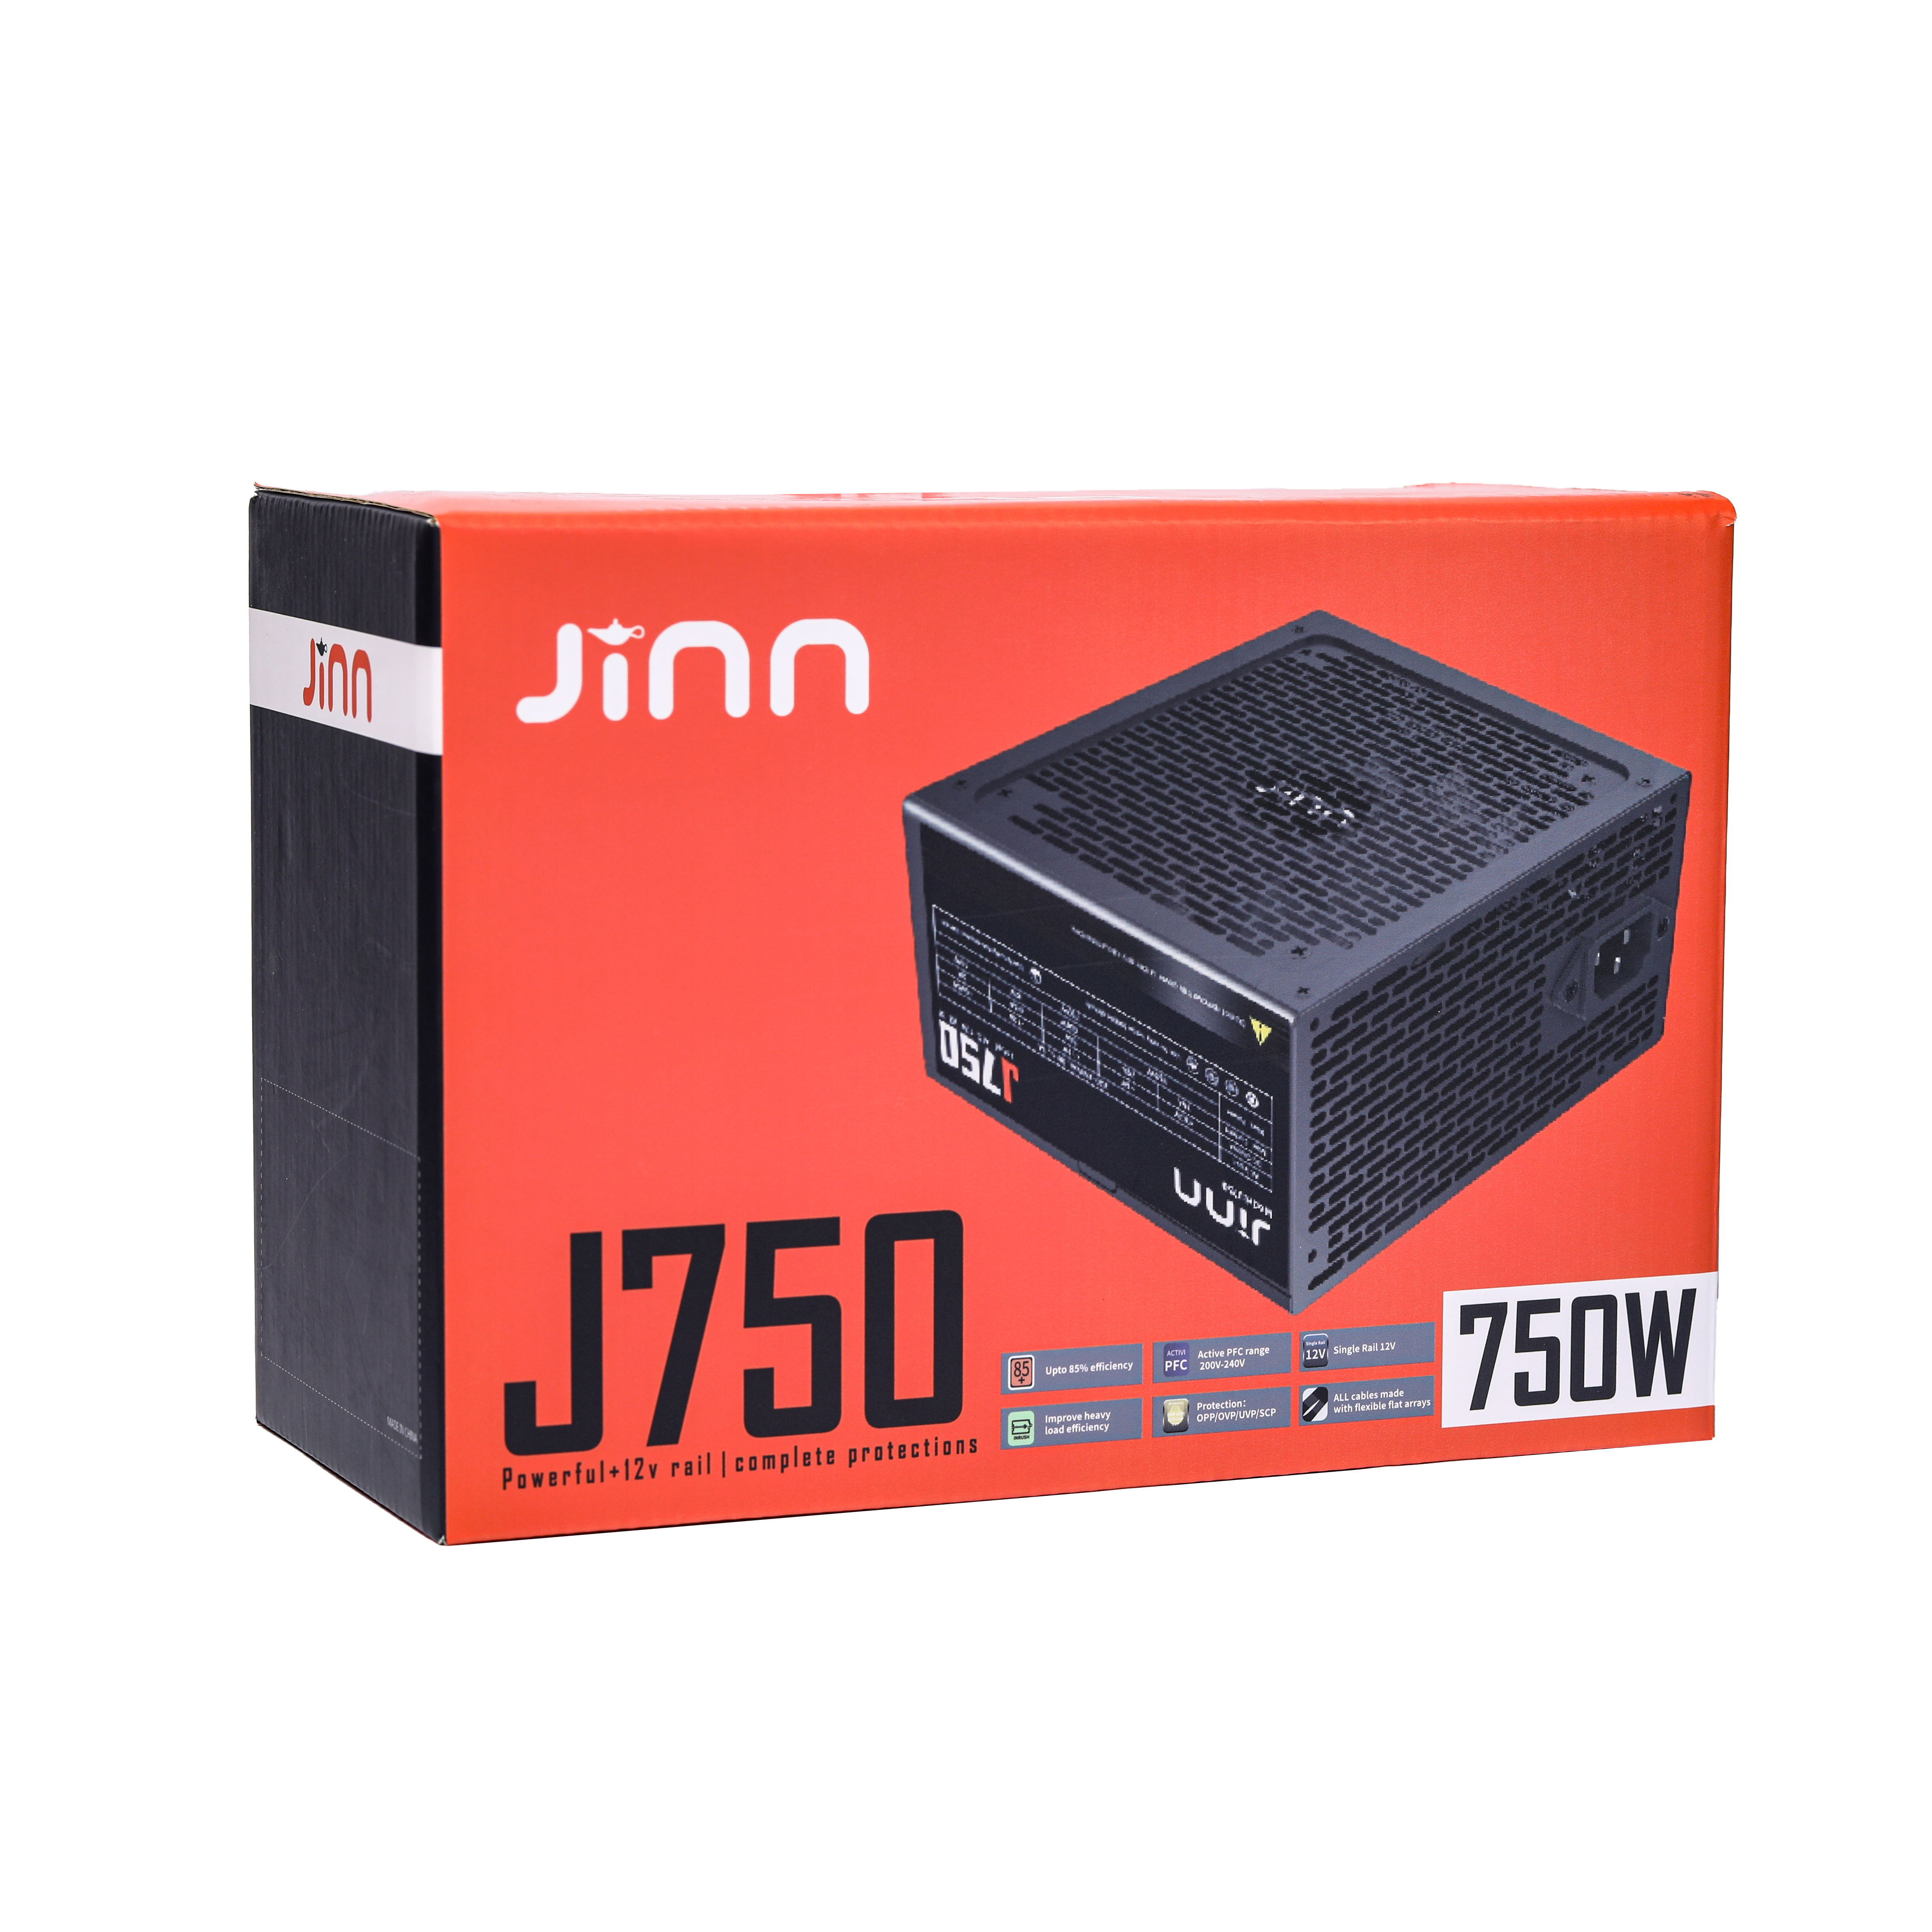 Nguồn Jinn J750 750W ATX